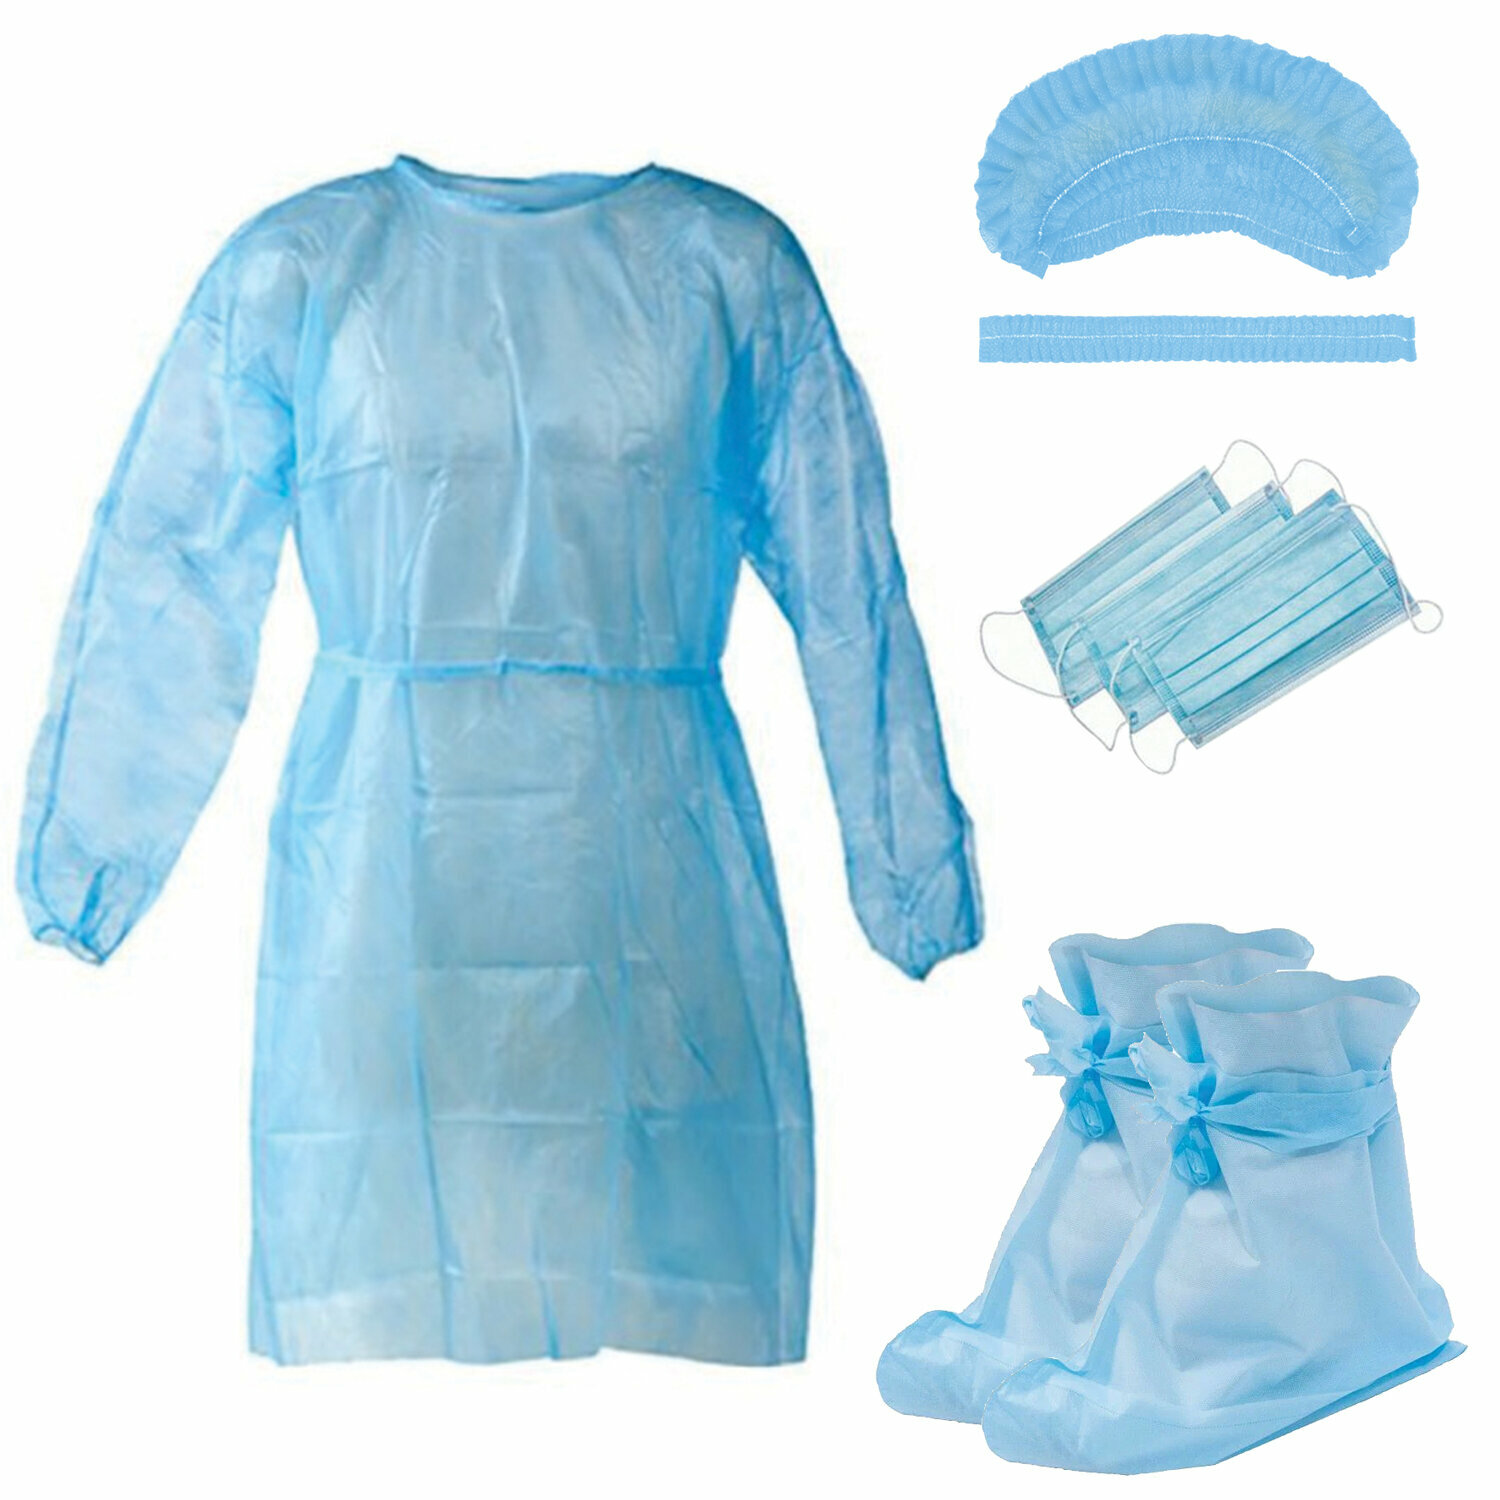 Комплект одежды защитный стерильный (халат, шапочка, маска, бахилы), NF В наборе: 1компл.